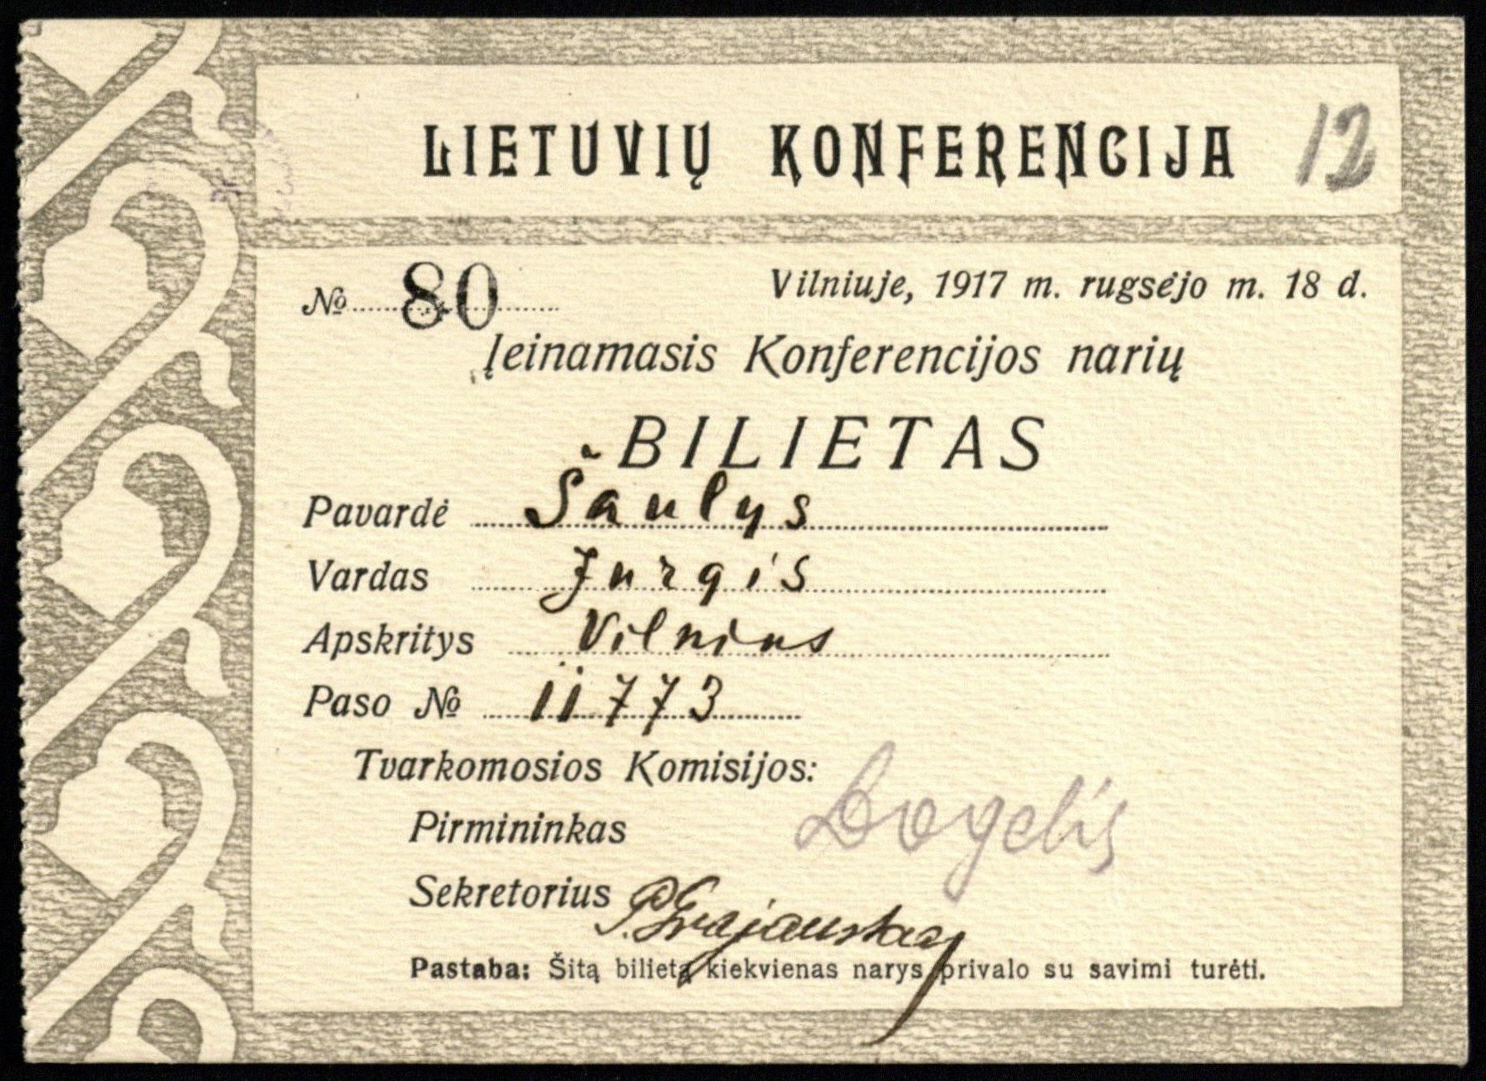 Lietuvių konferencijos dalyvio bilietas, išrašytas J. Šauliui